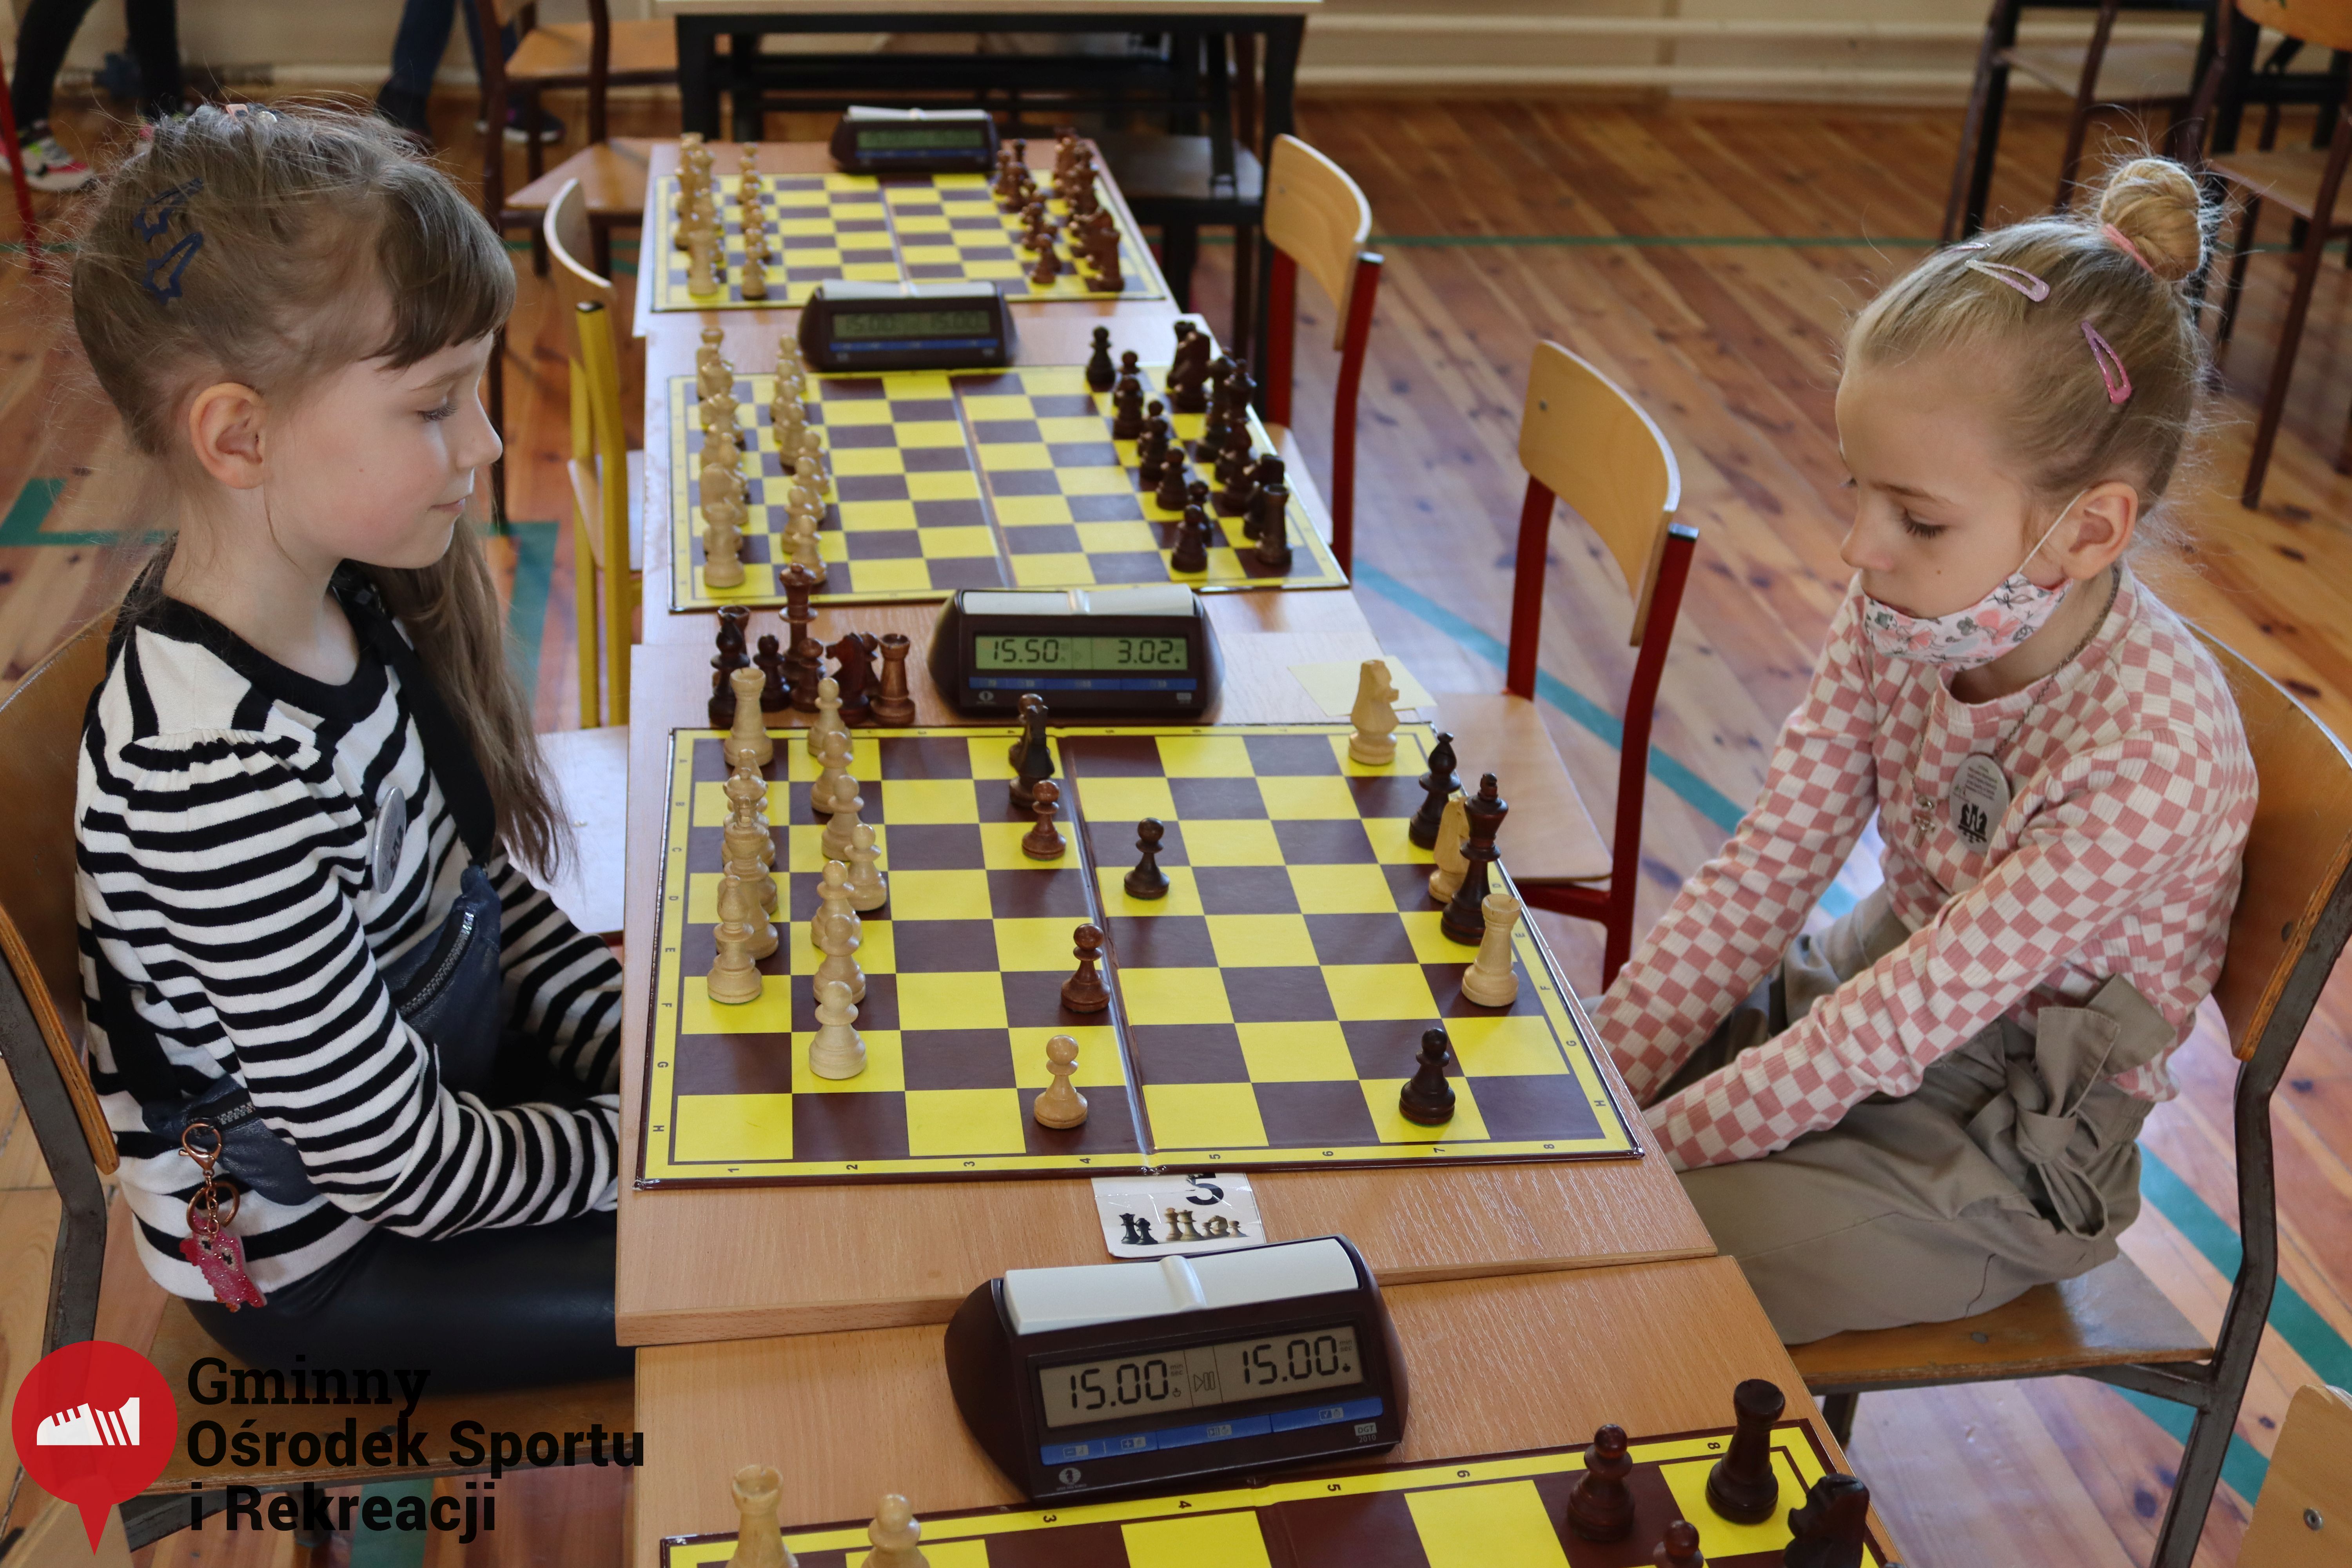 2022.03.12-13 Turniej szachowy - Edukacja przez Szachy034.jpg - 2,17 MB